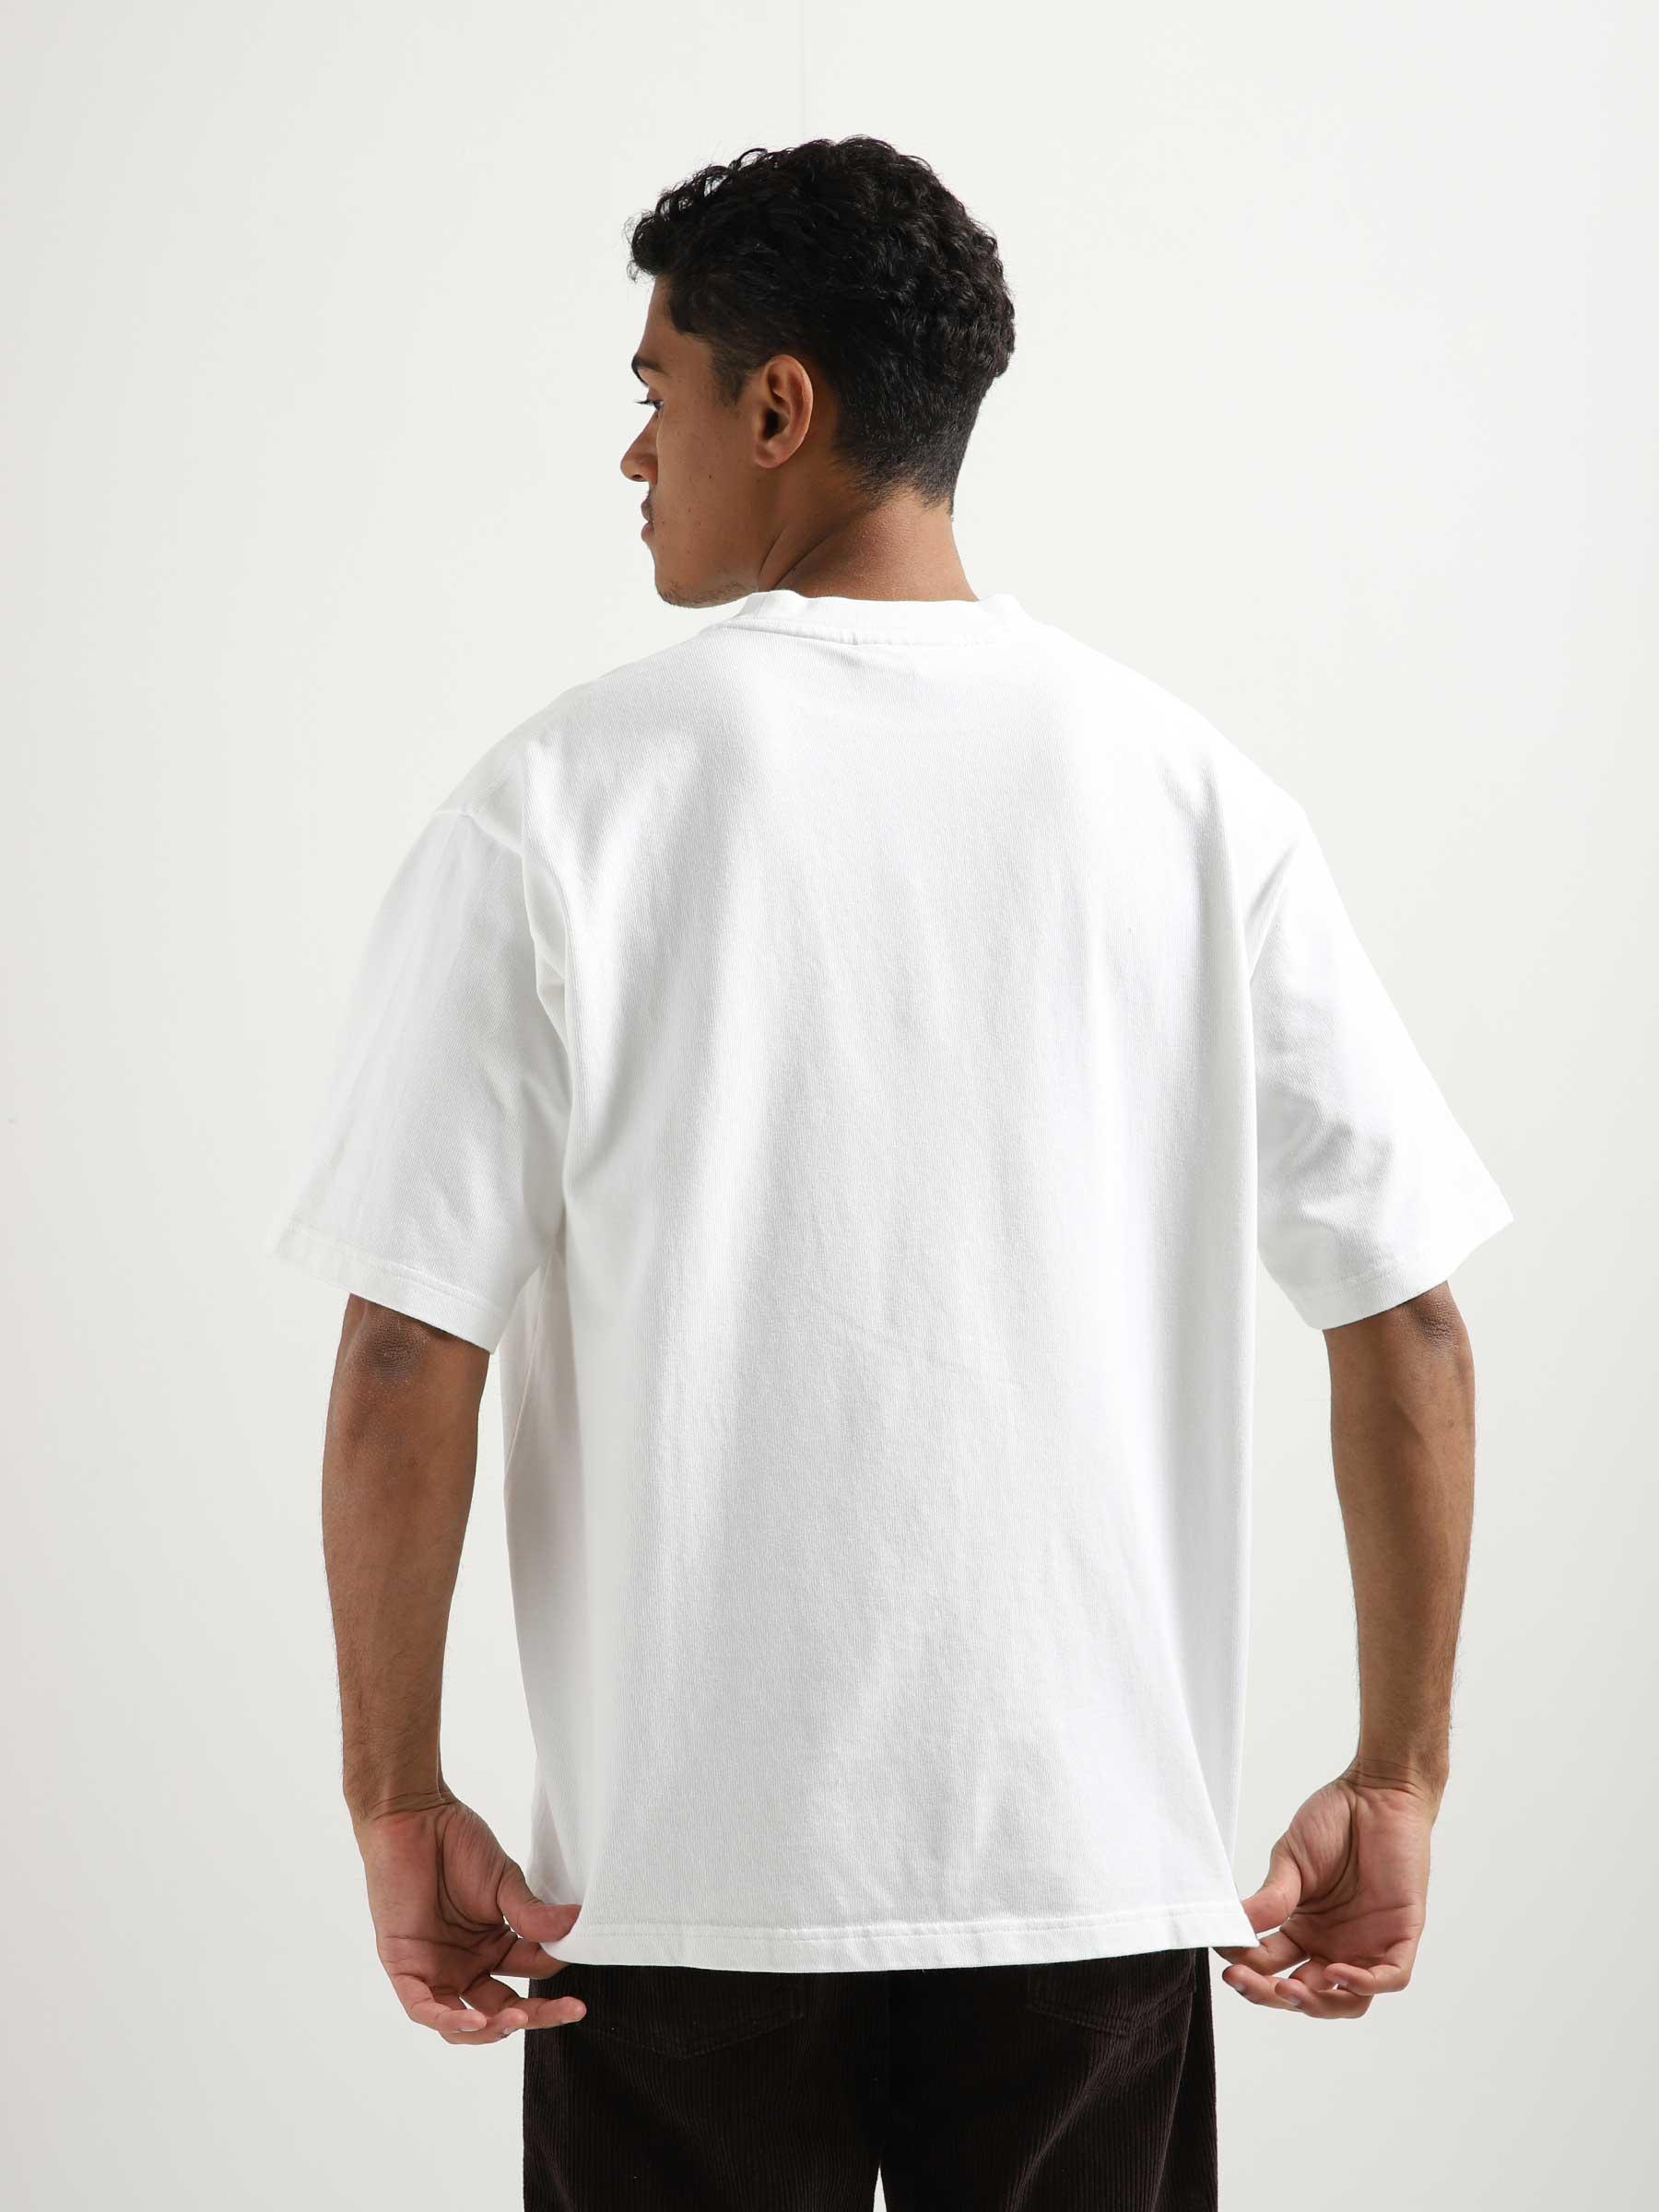 Heavyweight Studio T-shirt Optical White M120116